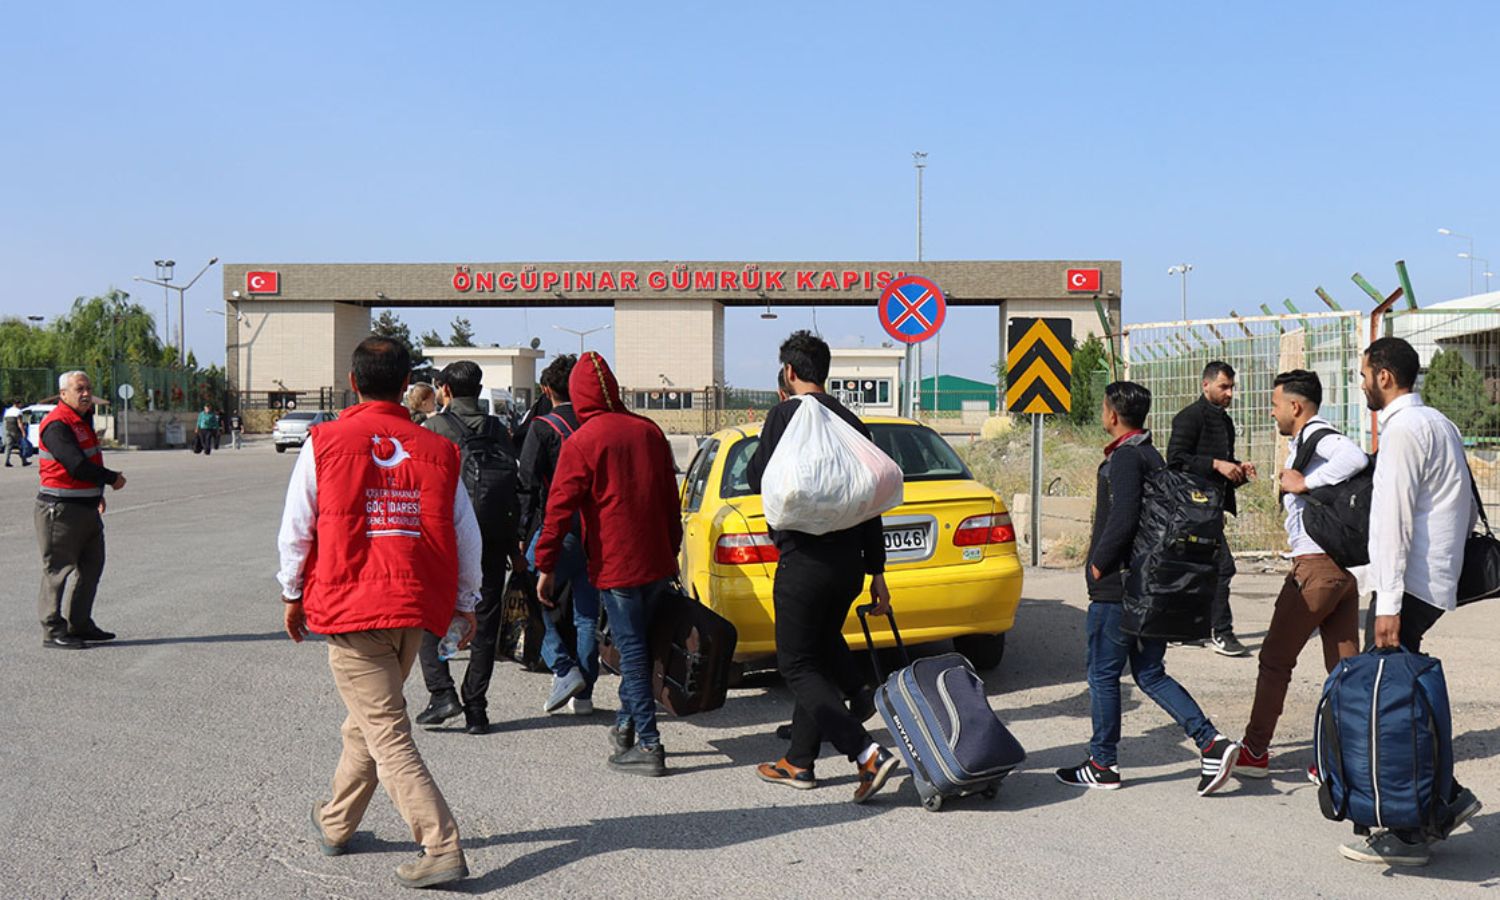 سوريون عائدون إلى سوريا من معبر "أونجو بينار" في الجانب التركي المقابل لمعبر "باب السلامة" في الجانب السوري (الأناضول)